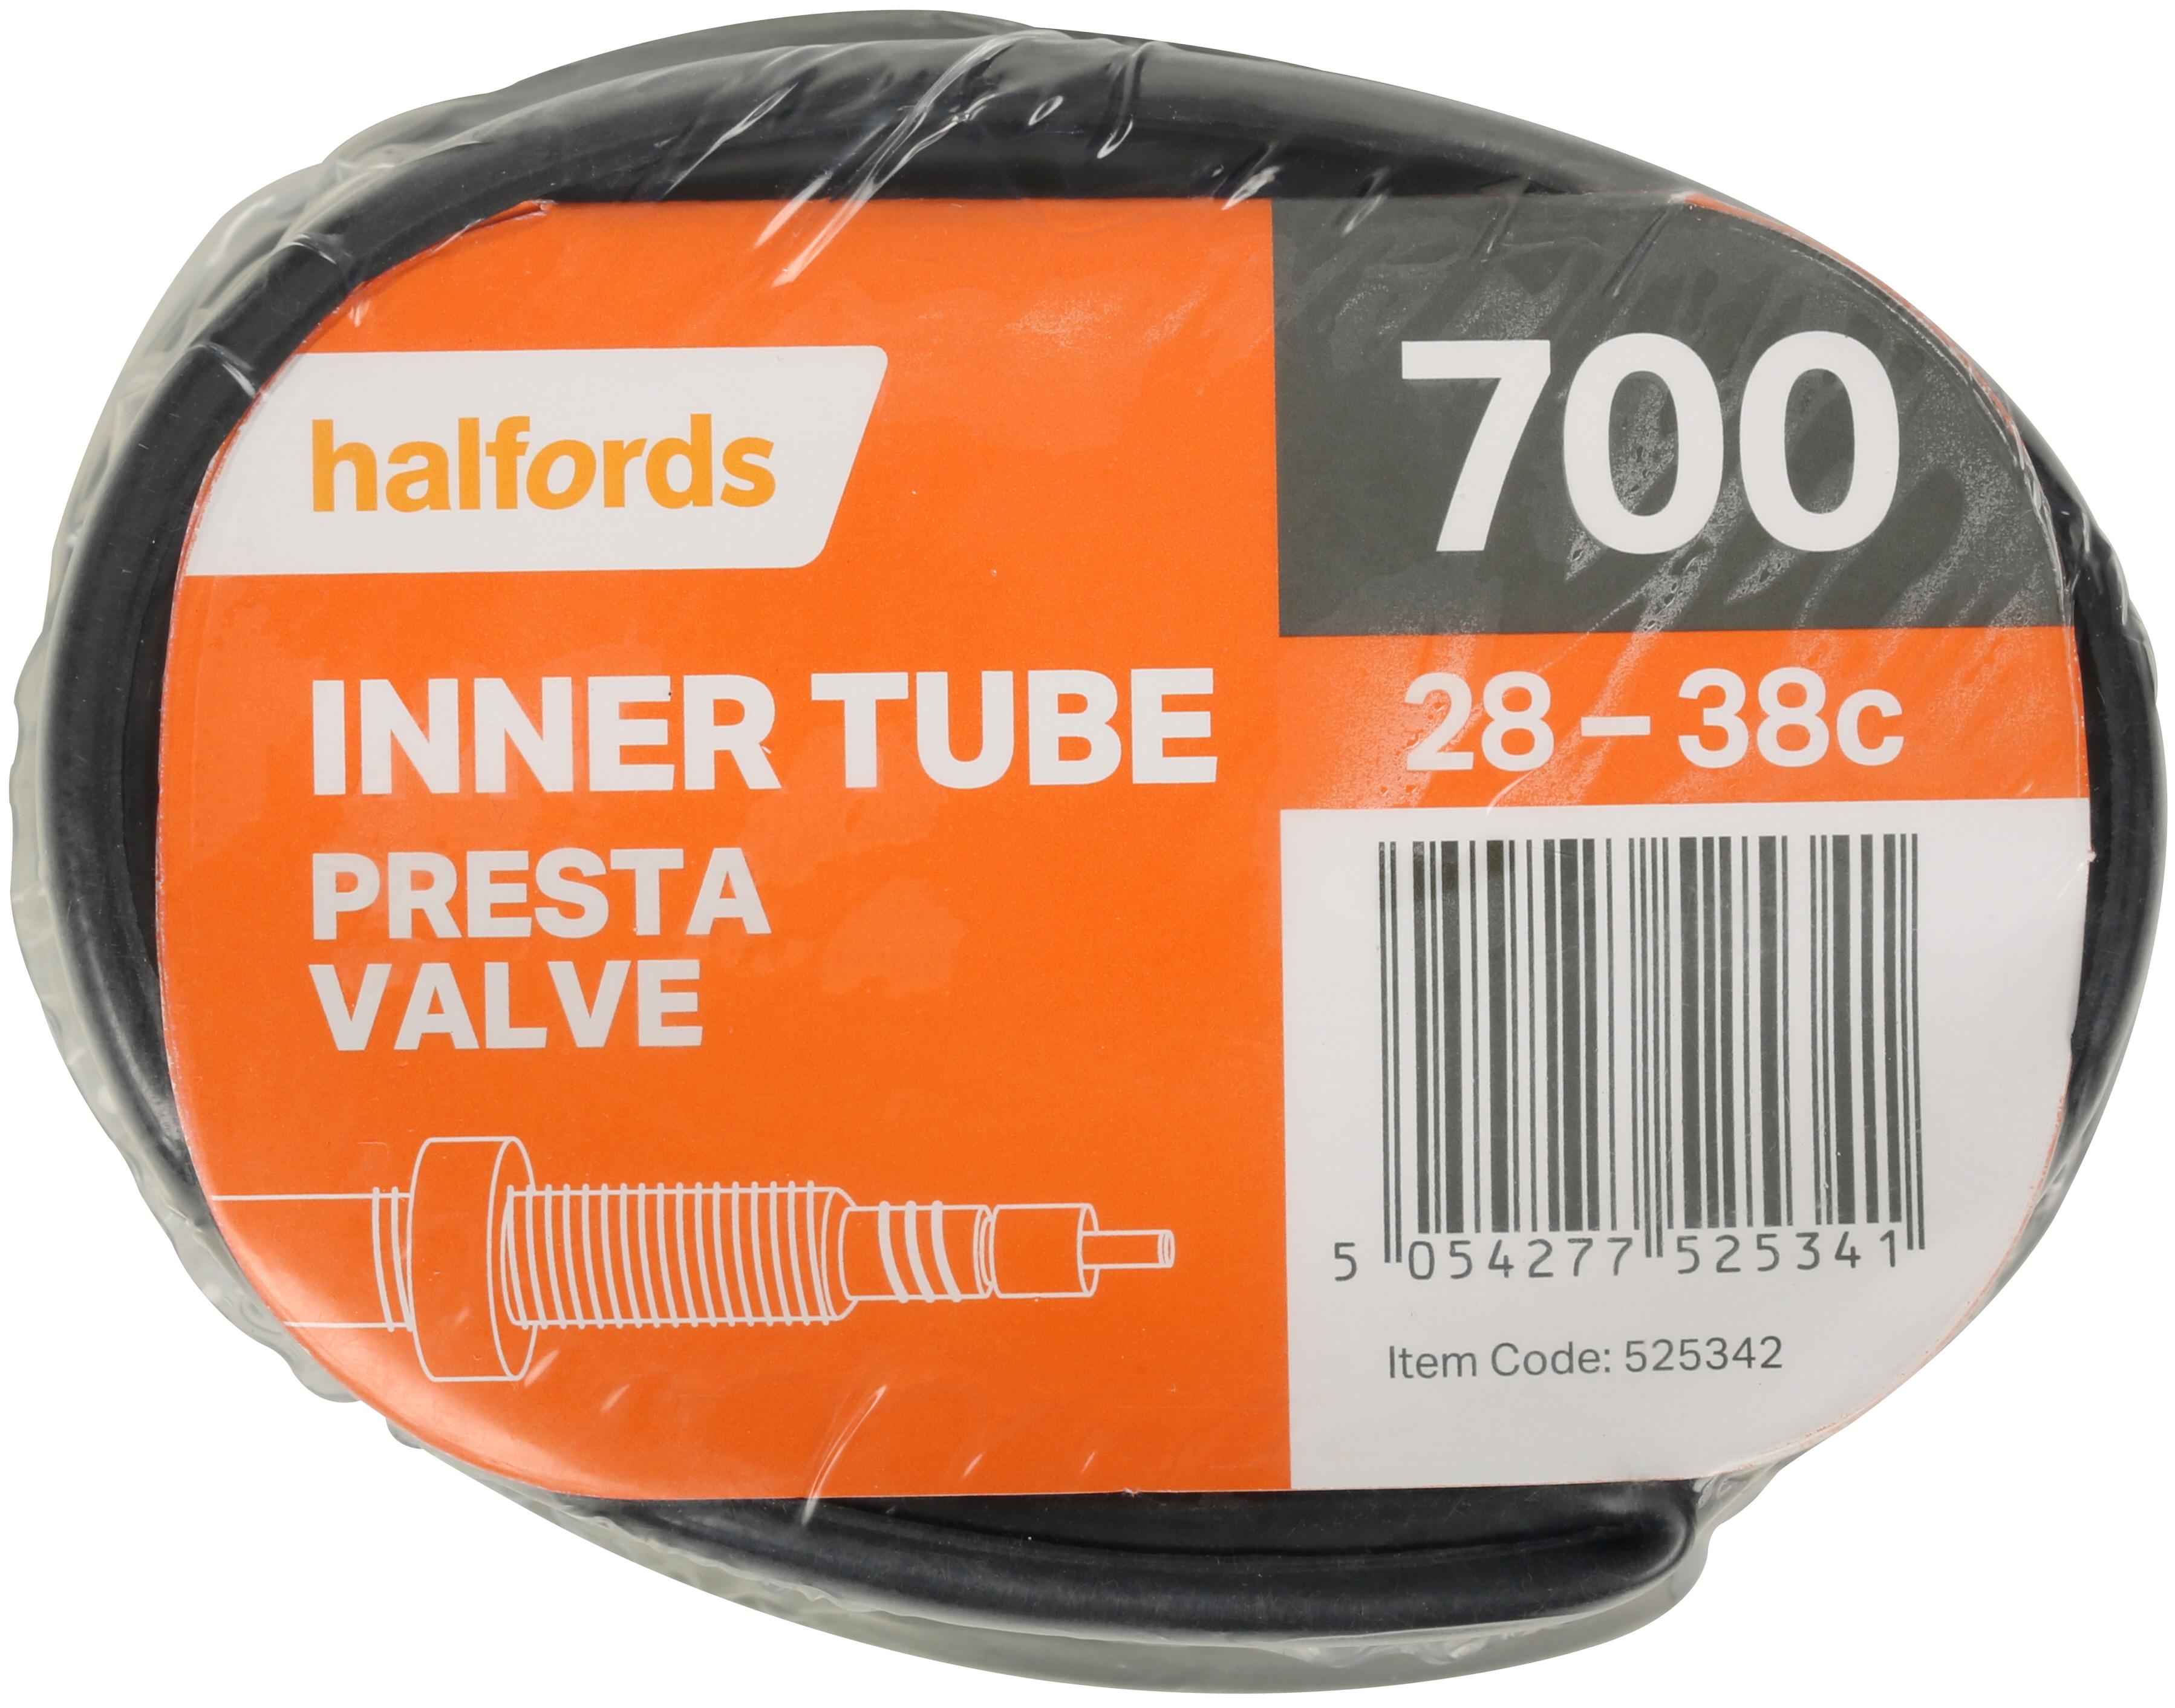 Halfords Presta Bike Inner Tube - 700c 